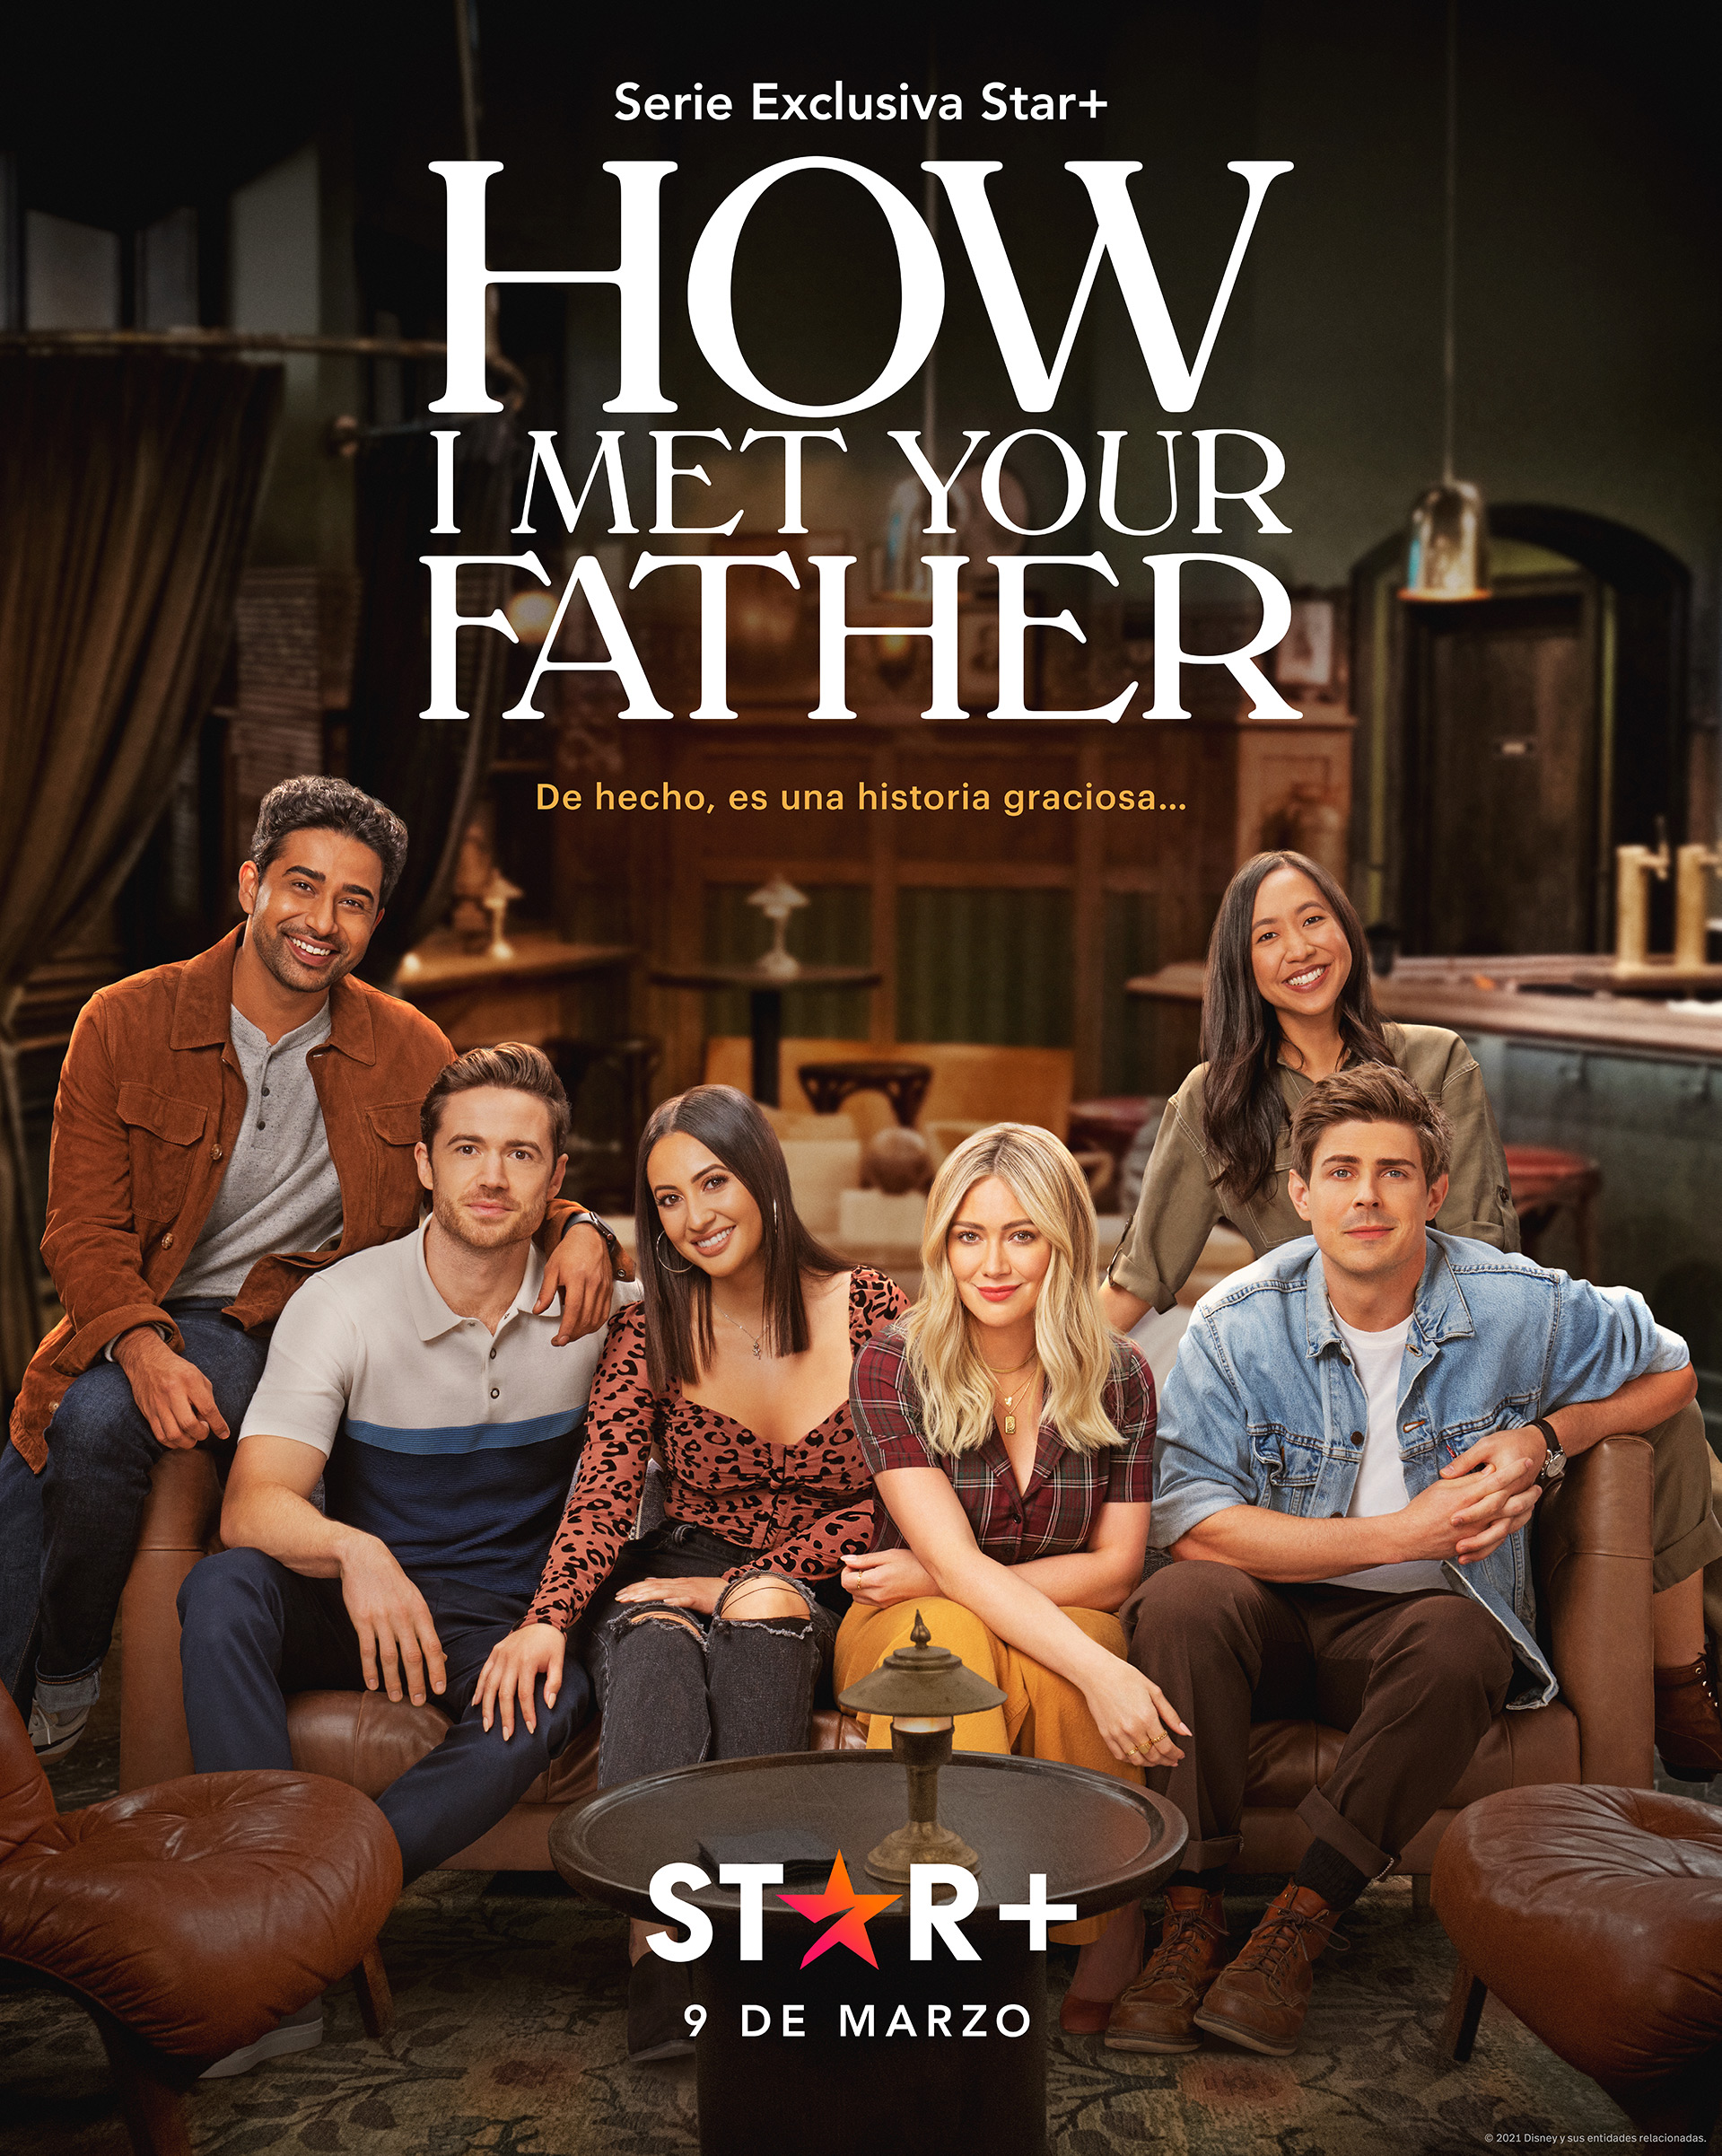  “How I met your father”: Star+ lanza trailer de su nueva comedia